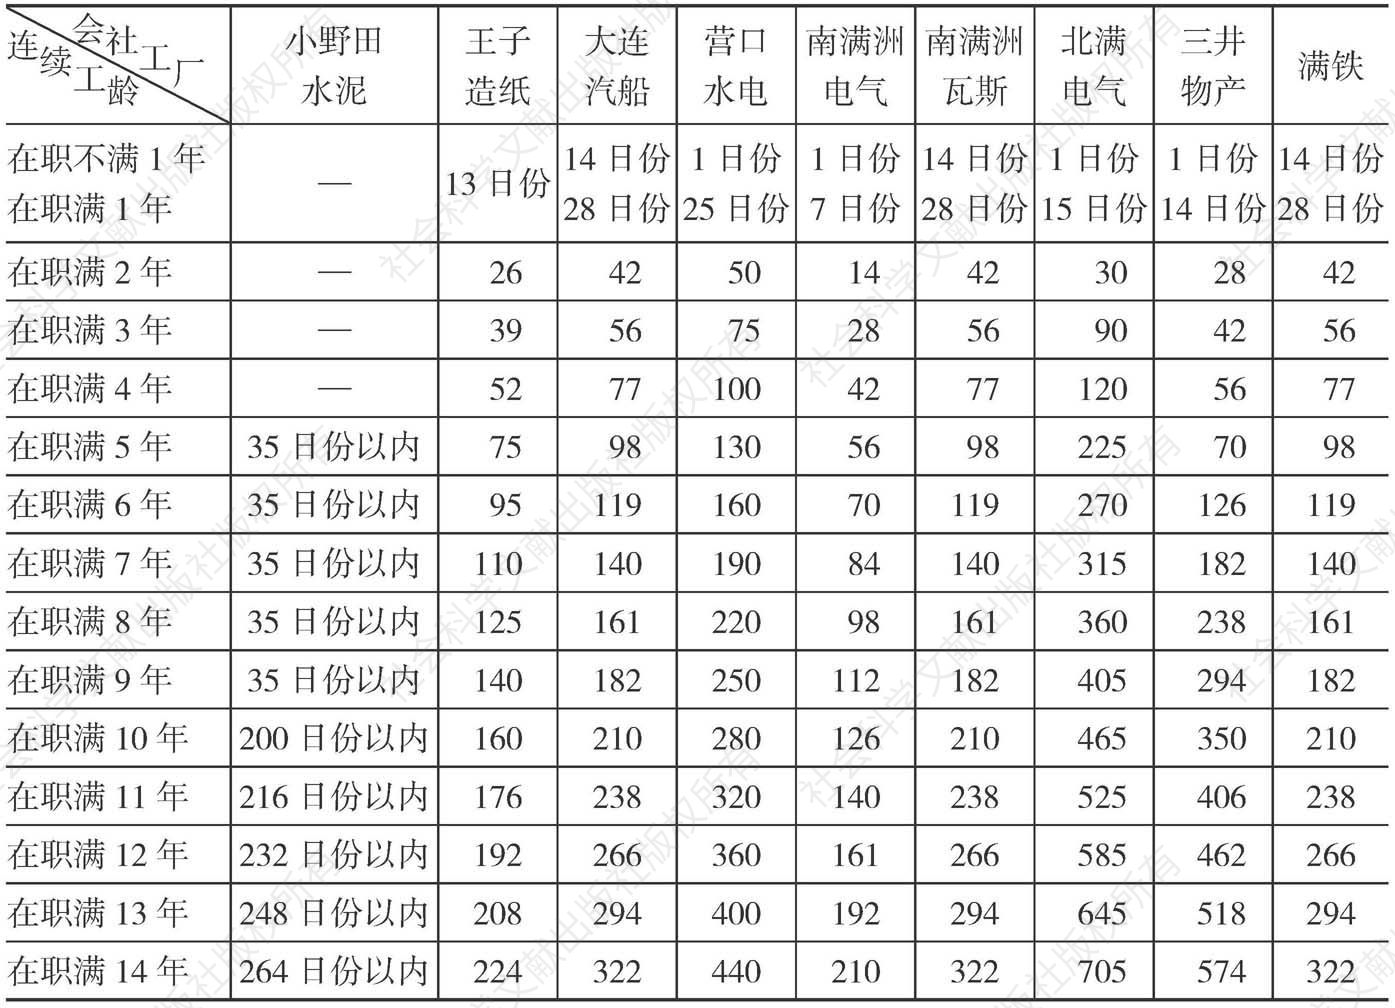 第十一表 满铁同社外中国佣员退职津贴比较表